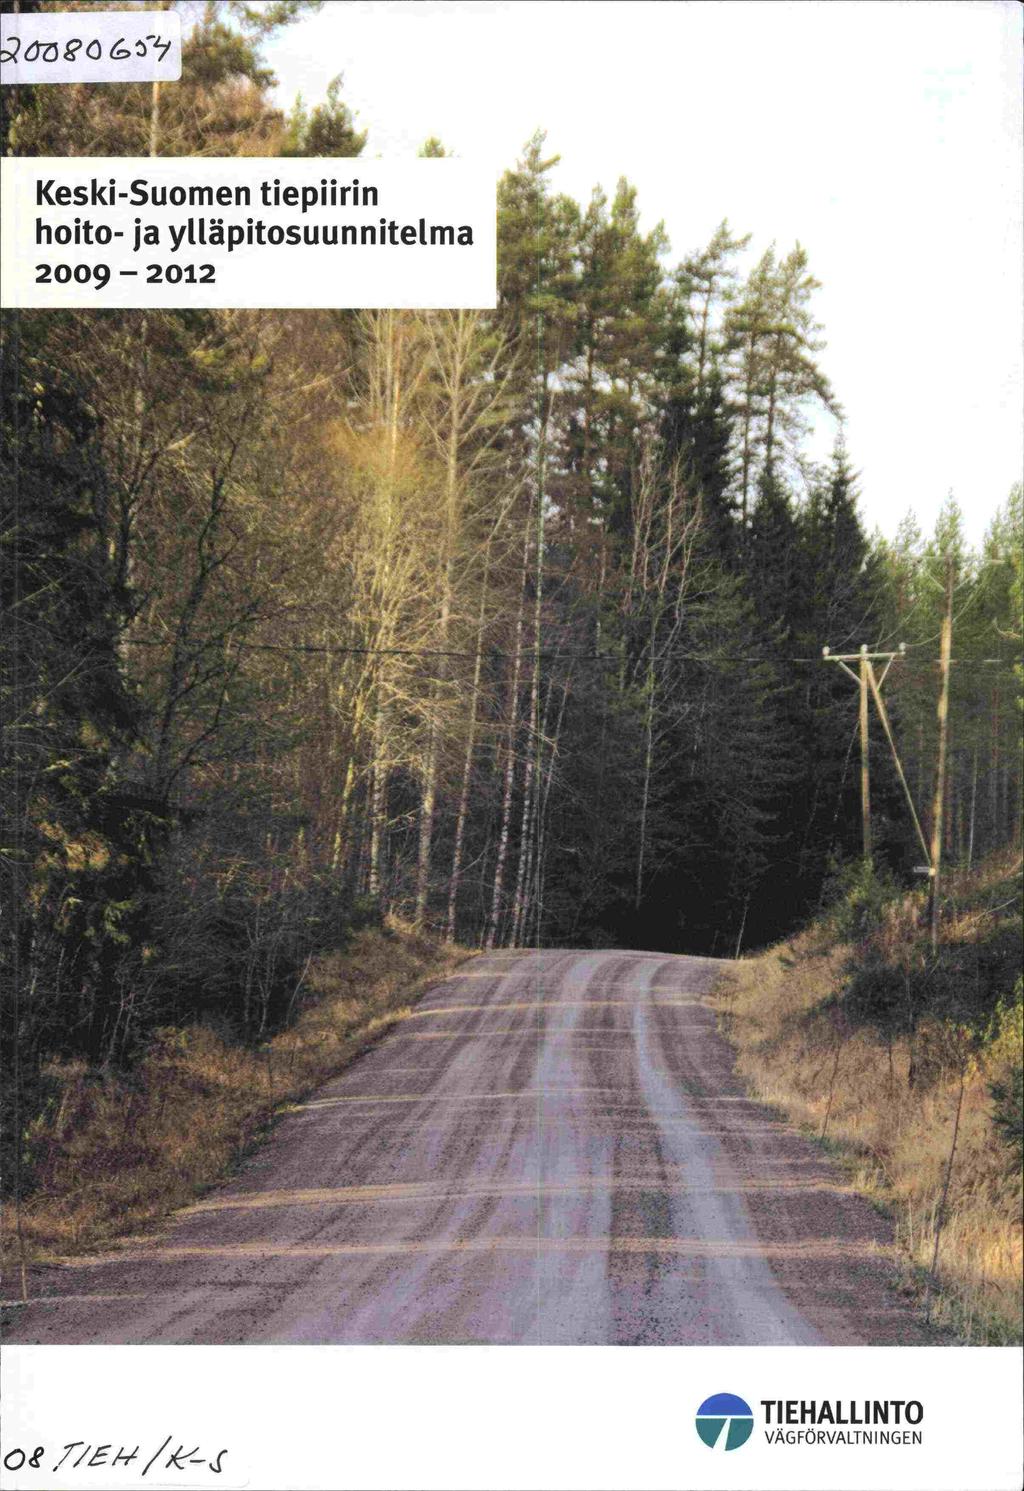 OOga Keski-Suomen tiepiirin hoito- ja ylläpitosuunnitelma